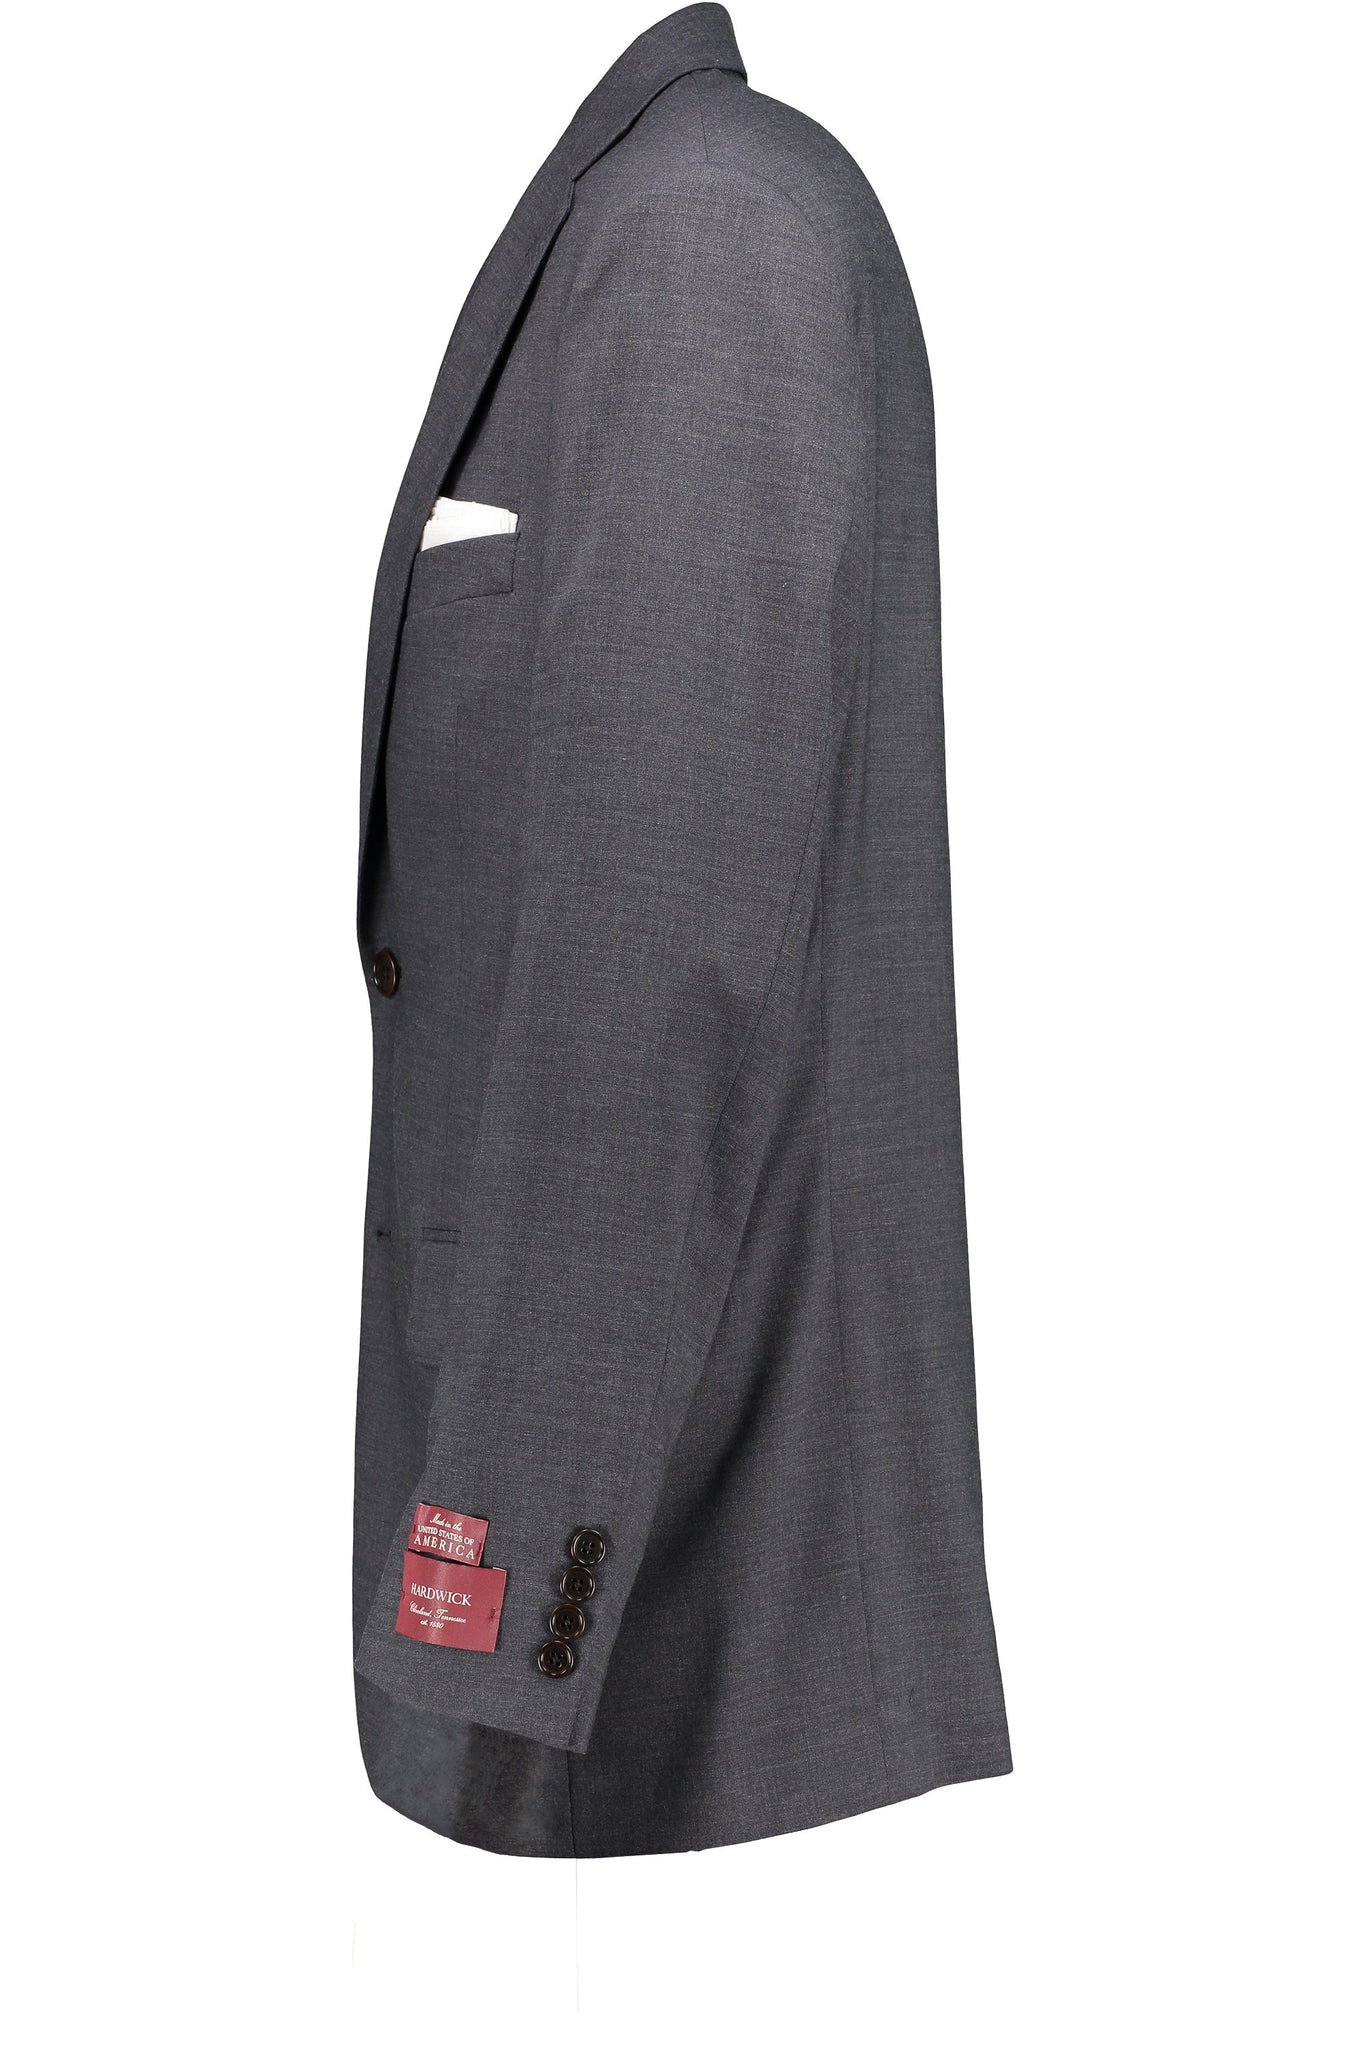 Classic Fit Grey H-Tech Wool SS Jacket - Big & Tall -  Hardwick.com